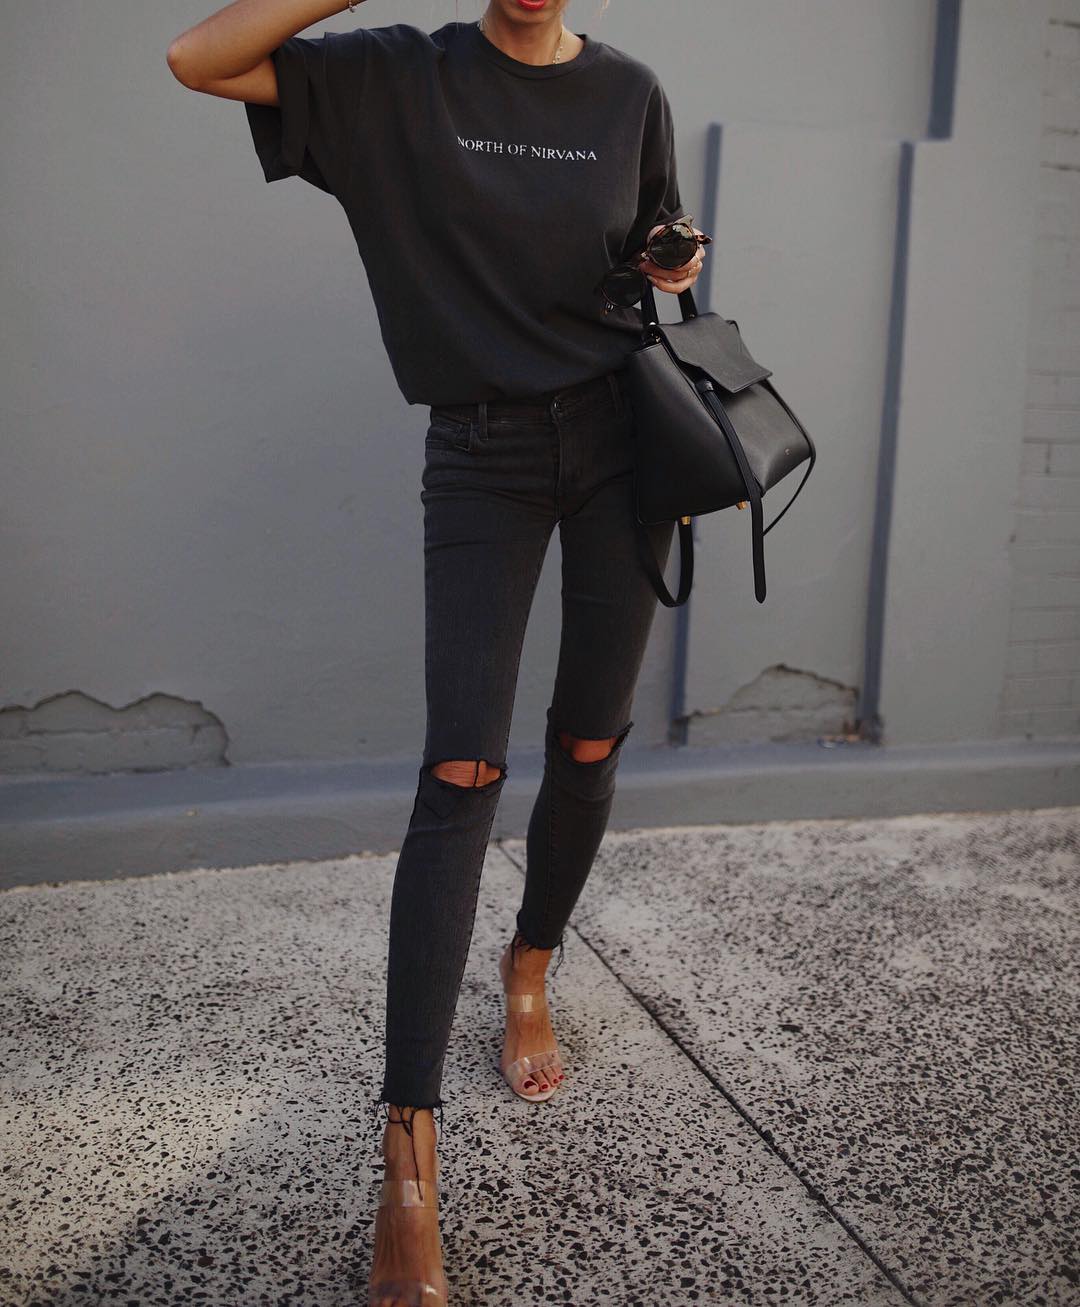 Черная футболка и джинсы